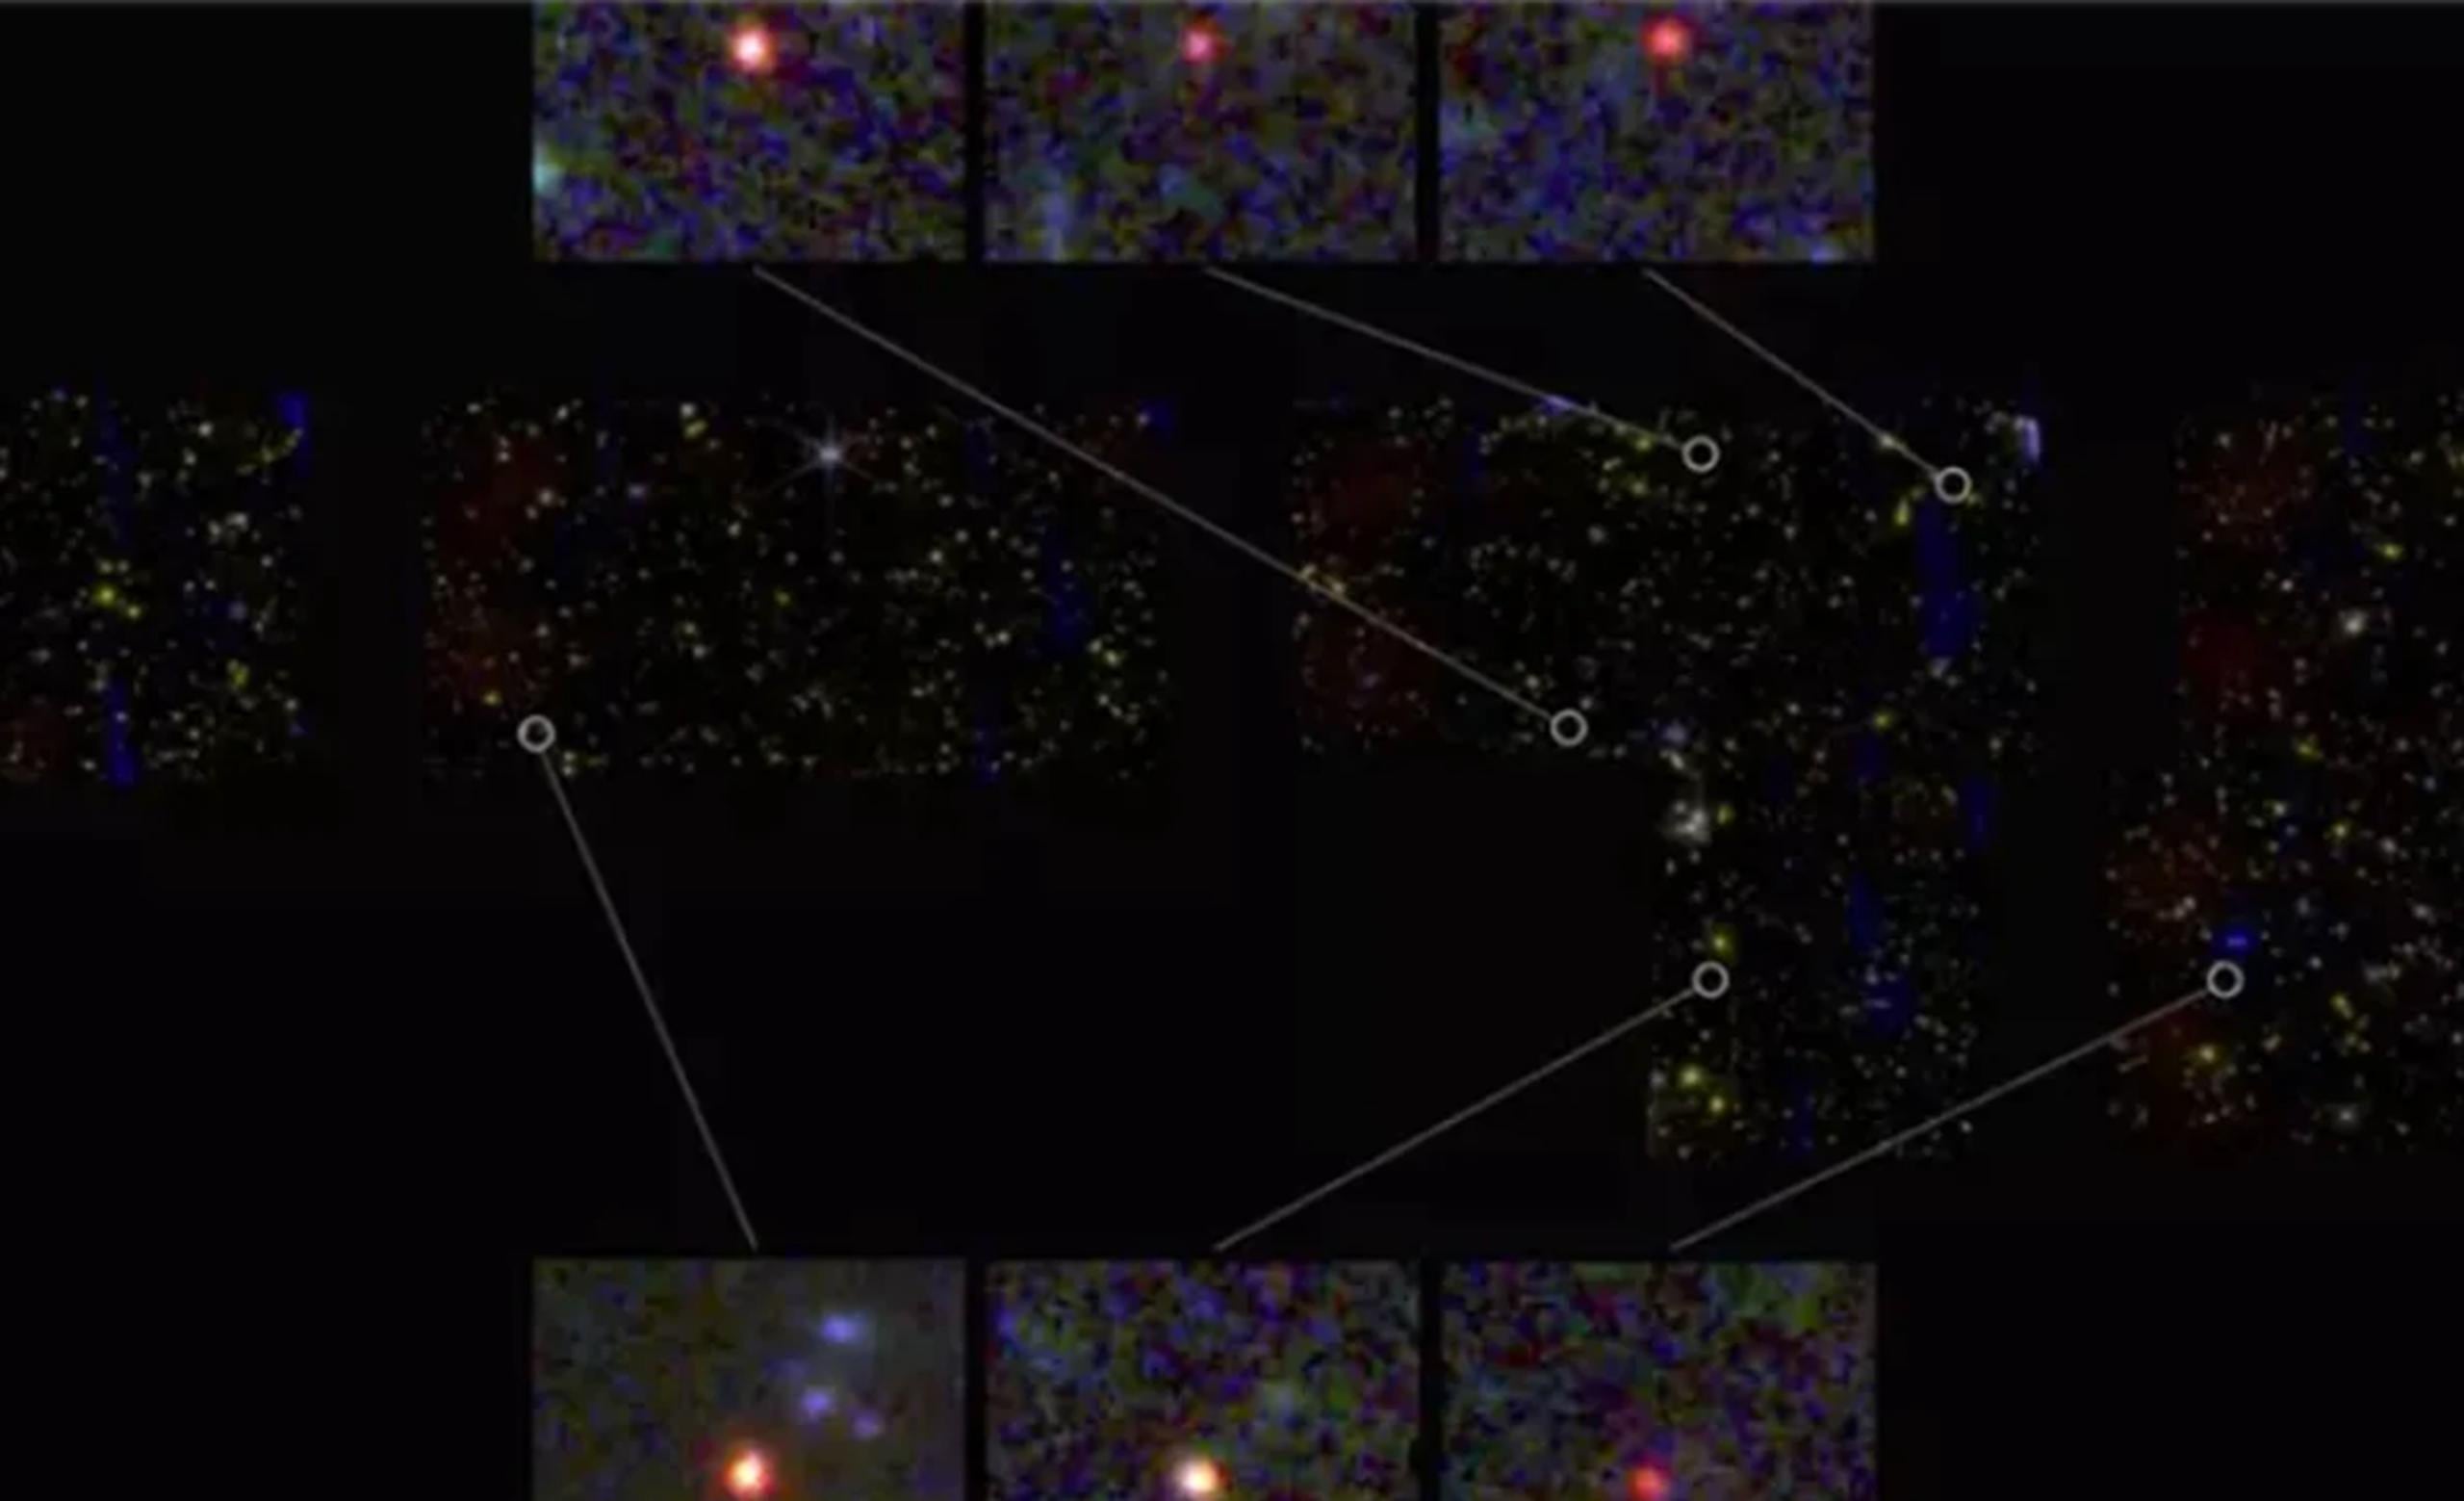 Imágenes de seis galaxias masivas candidatas, vistas 500-700 millones de años después del Big Bang (AP/NASA, ESA, CSA, I. LABBE)